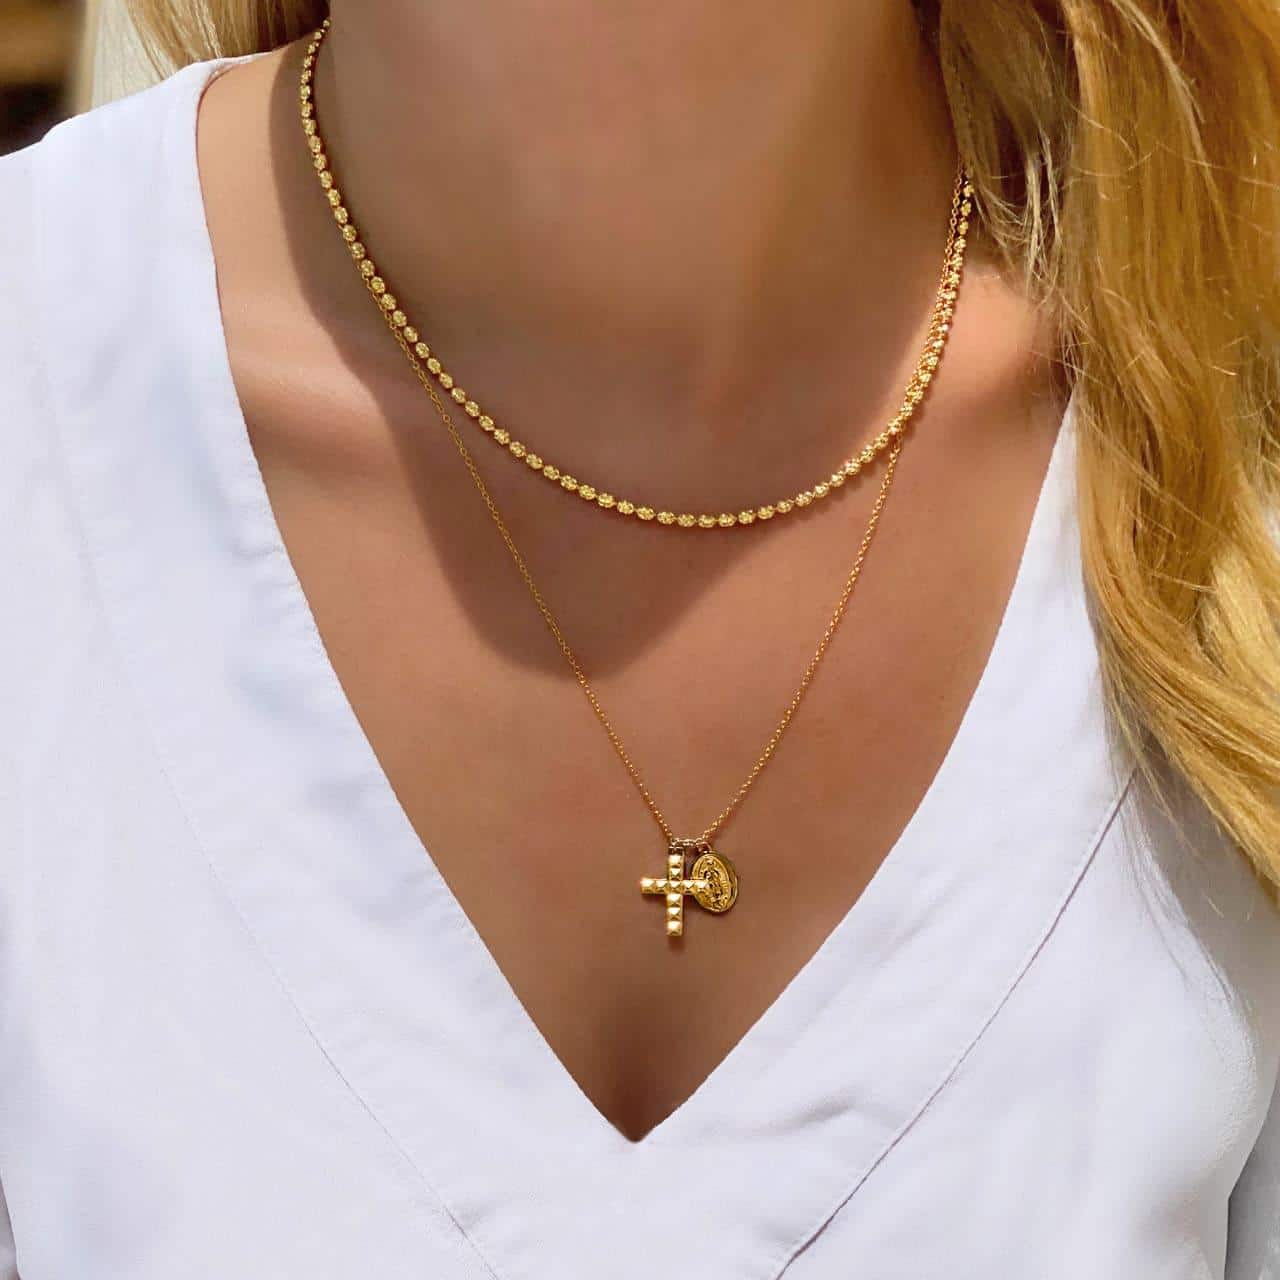 Halskette mit kleinen Kügelchen aus Silber 18 Karat vergoldet getragen zur Kreuzkette in Biel